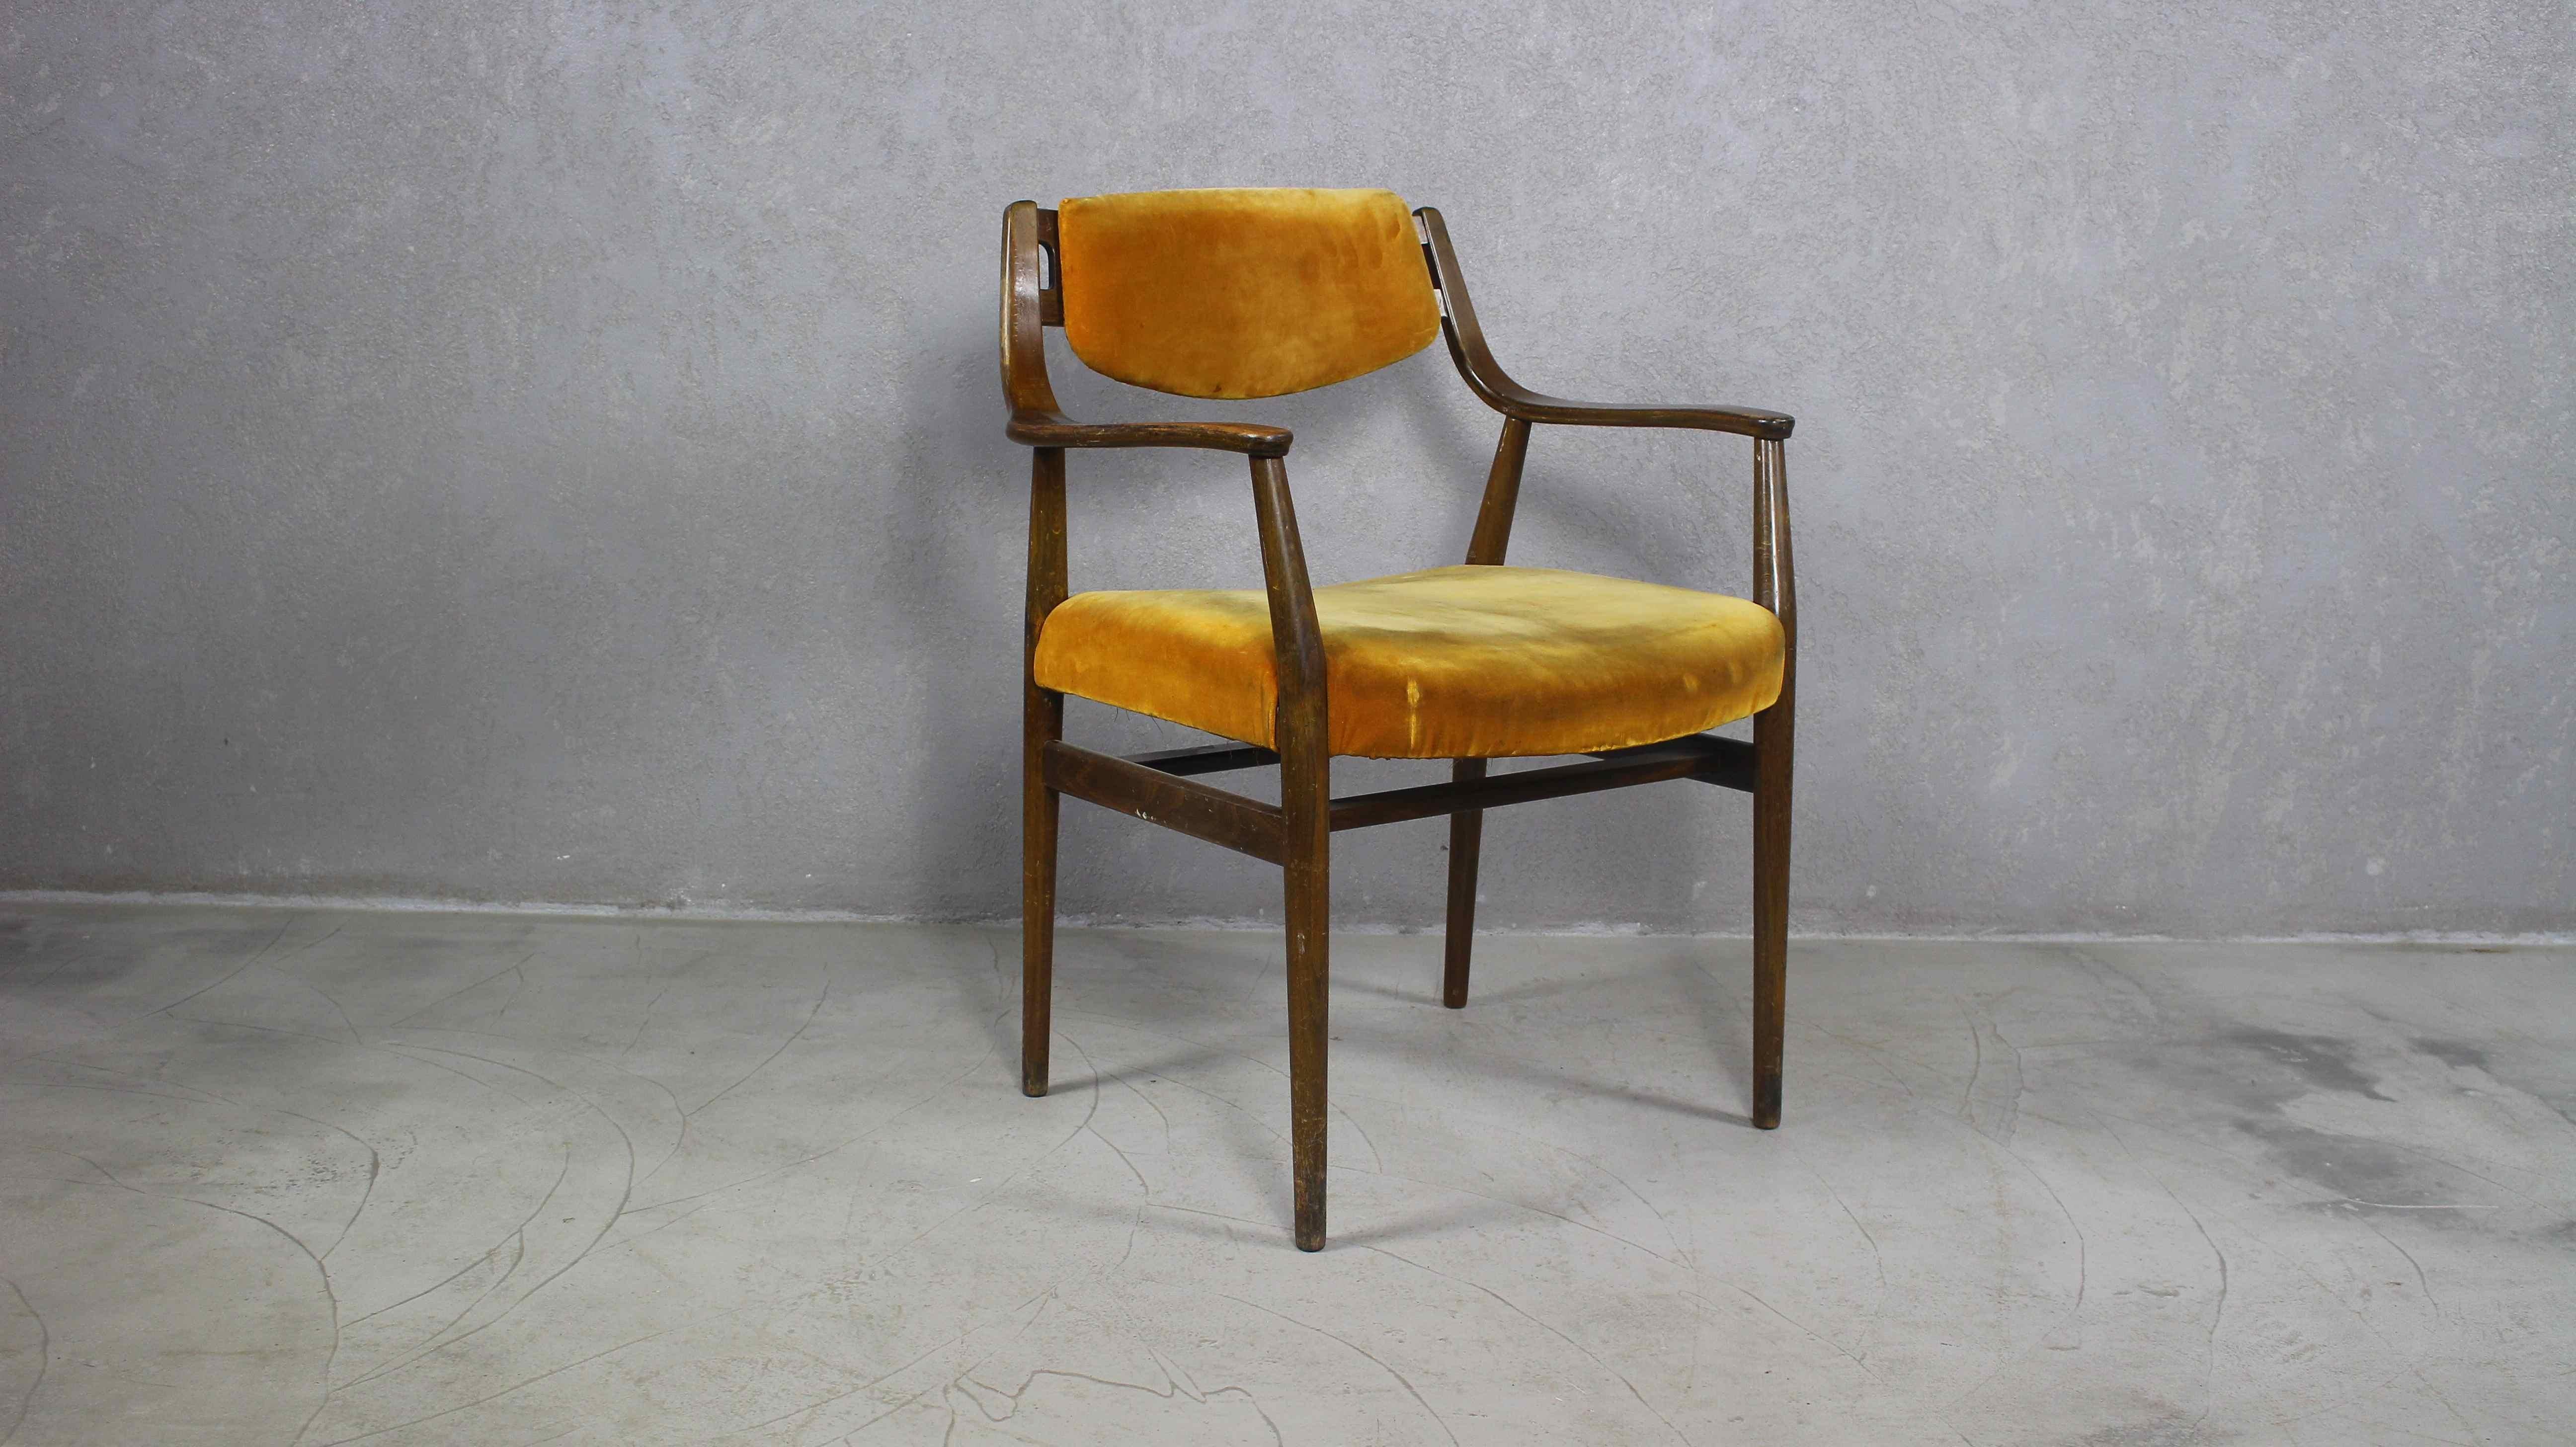 Fauteuil en bois danois vintage des années 1960.
Elegant et sculptural fauteuil danois Mid-Century Modern en bois massif. Pieds coniques ronds. Accoudoirs évasés.
Convient parfaitement comme chaise de bureau
Un design et des détails similaires